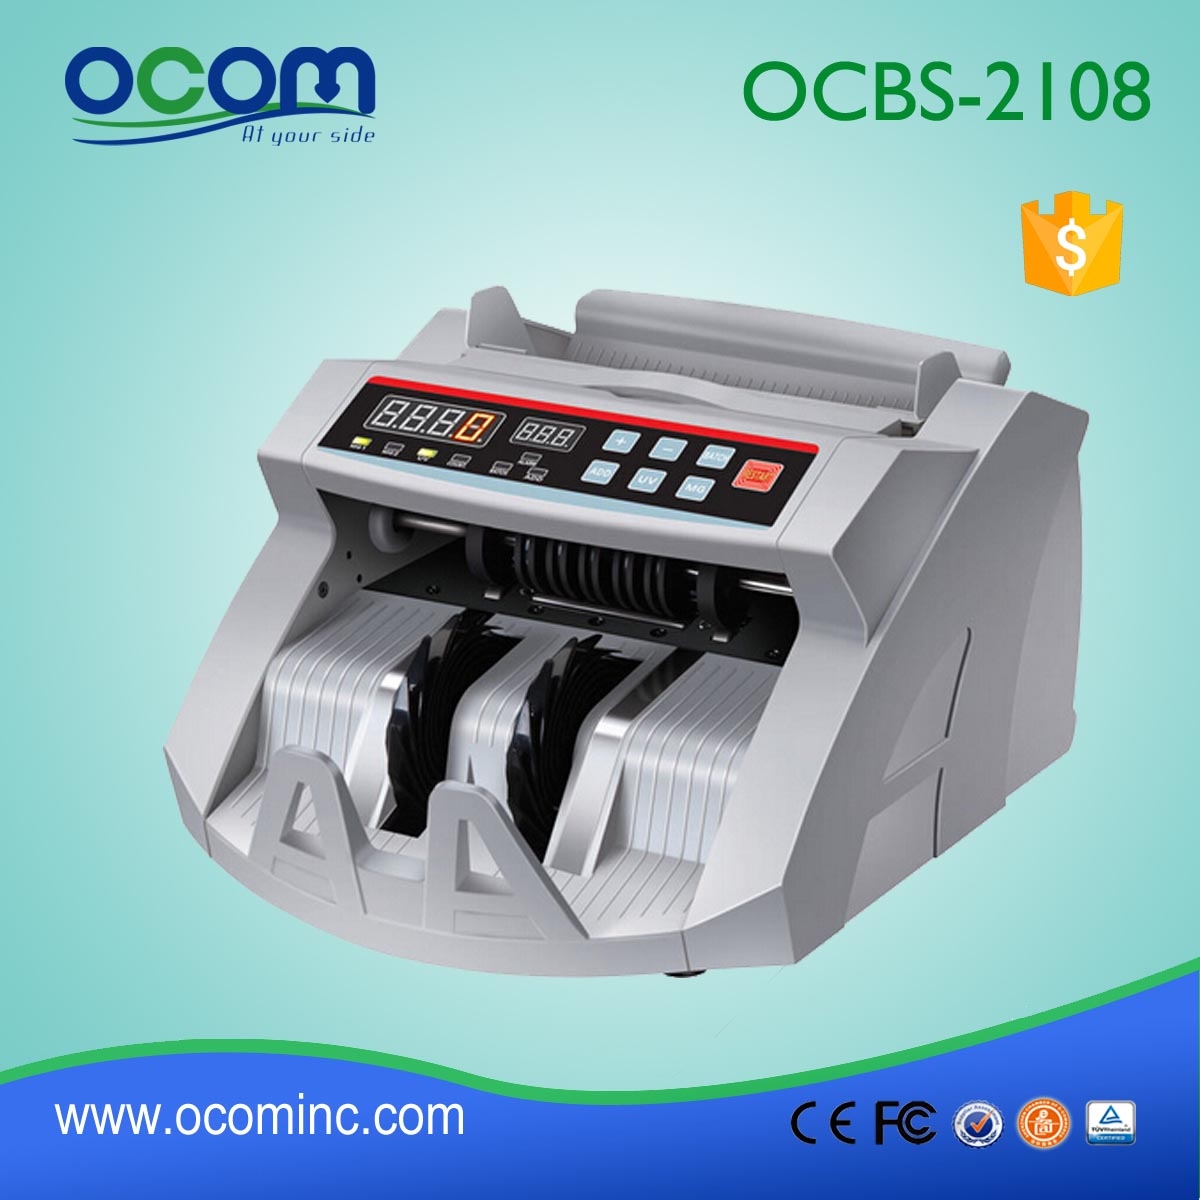 OCOM MONEY COUNTER OCBC-2108,WITH AV